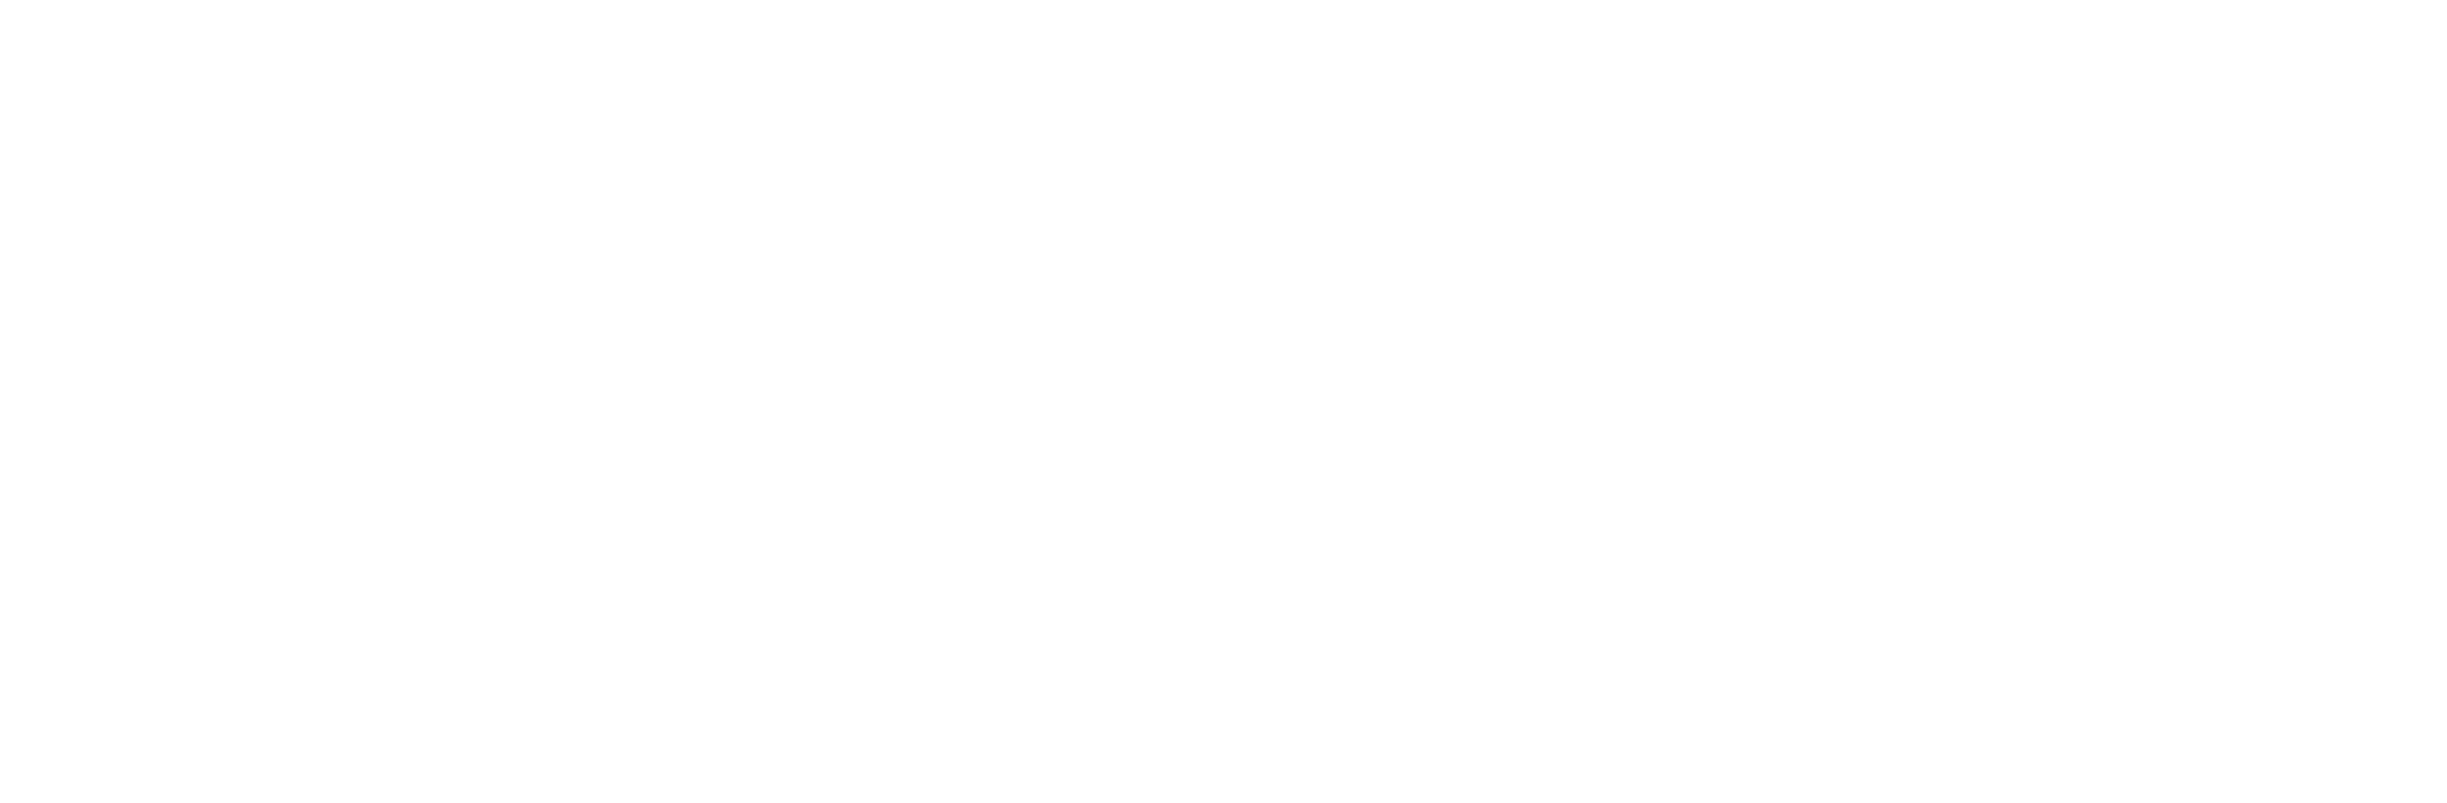 Animus Medicus logo